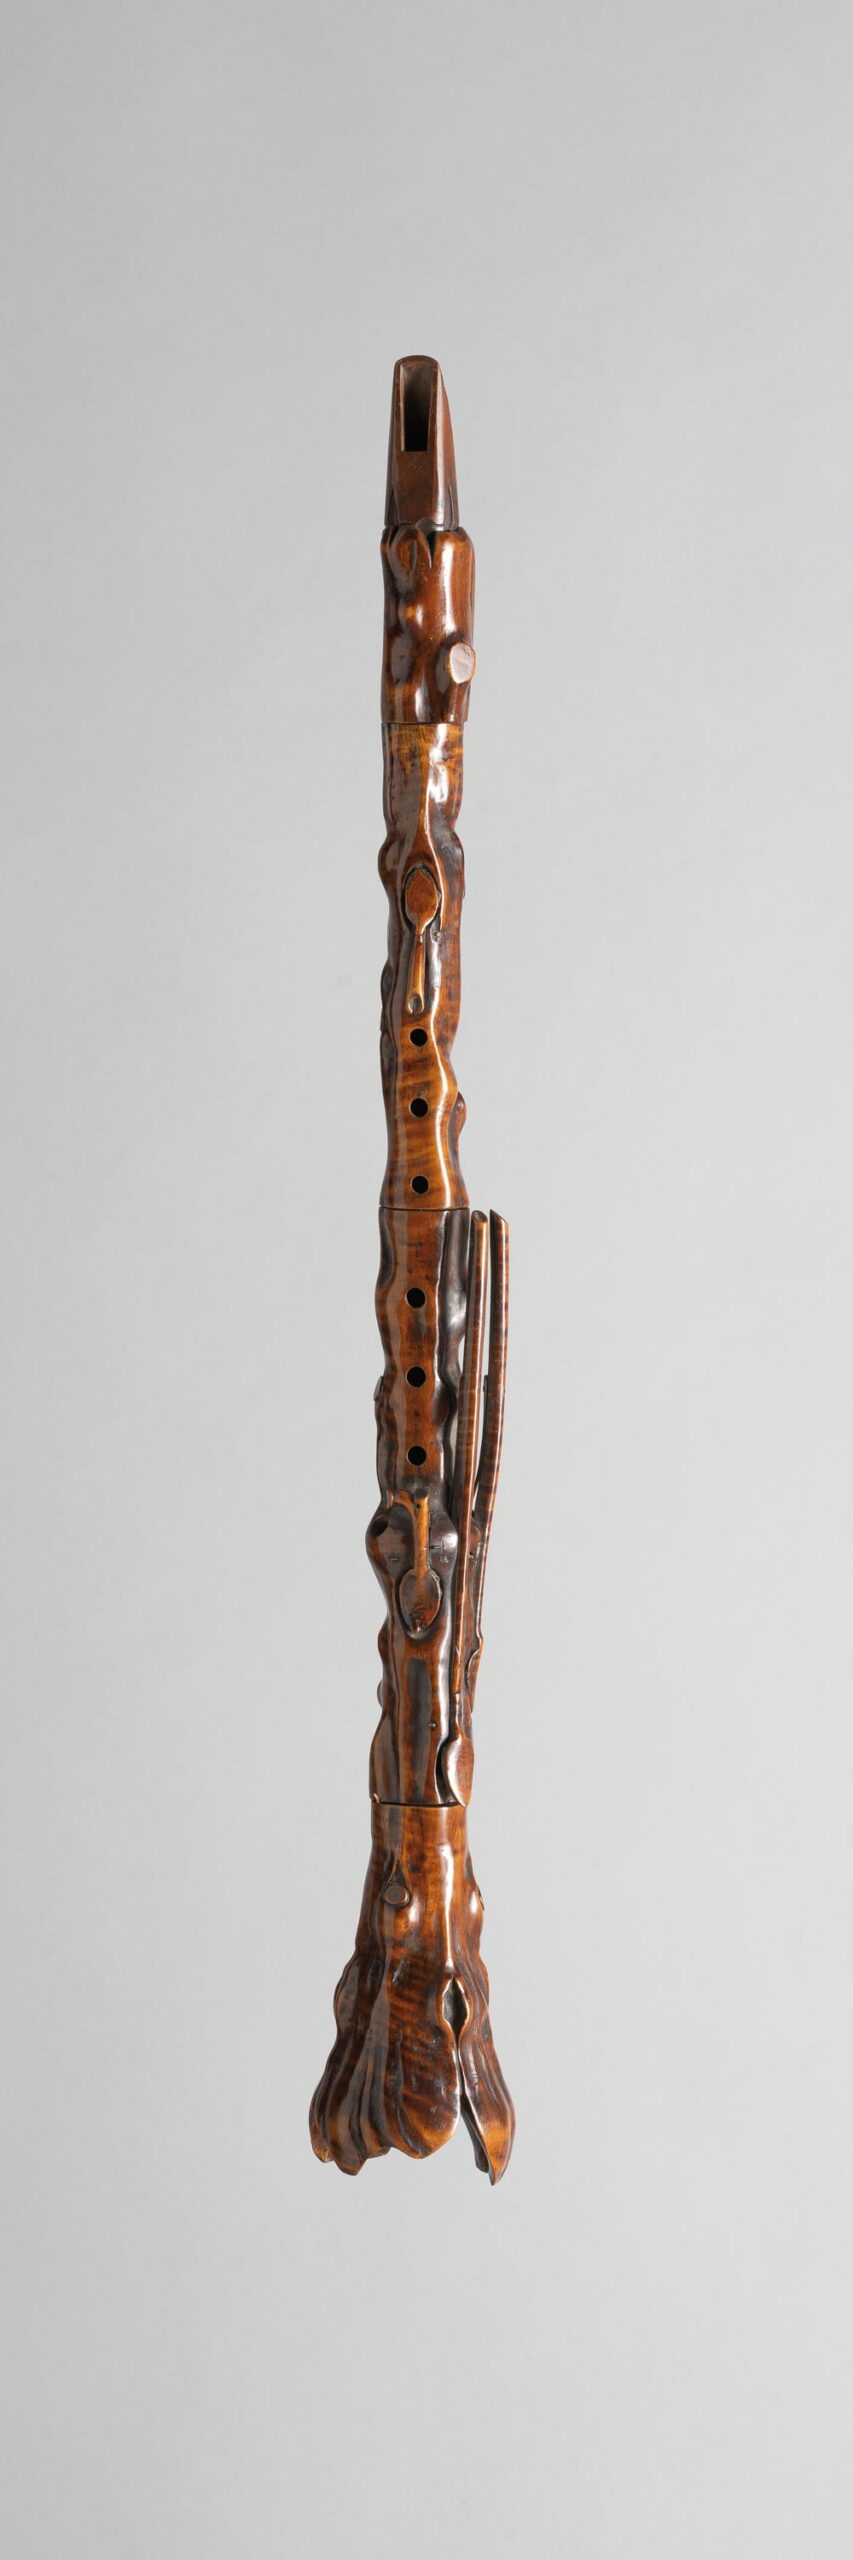 Clarinette en bois fruitier en imitation de branche, attribuée à AMMANN Instrument mis en vente par Vichy Enchères le 5 novembre 2022 © C. Darbelet